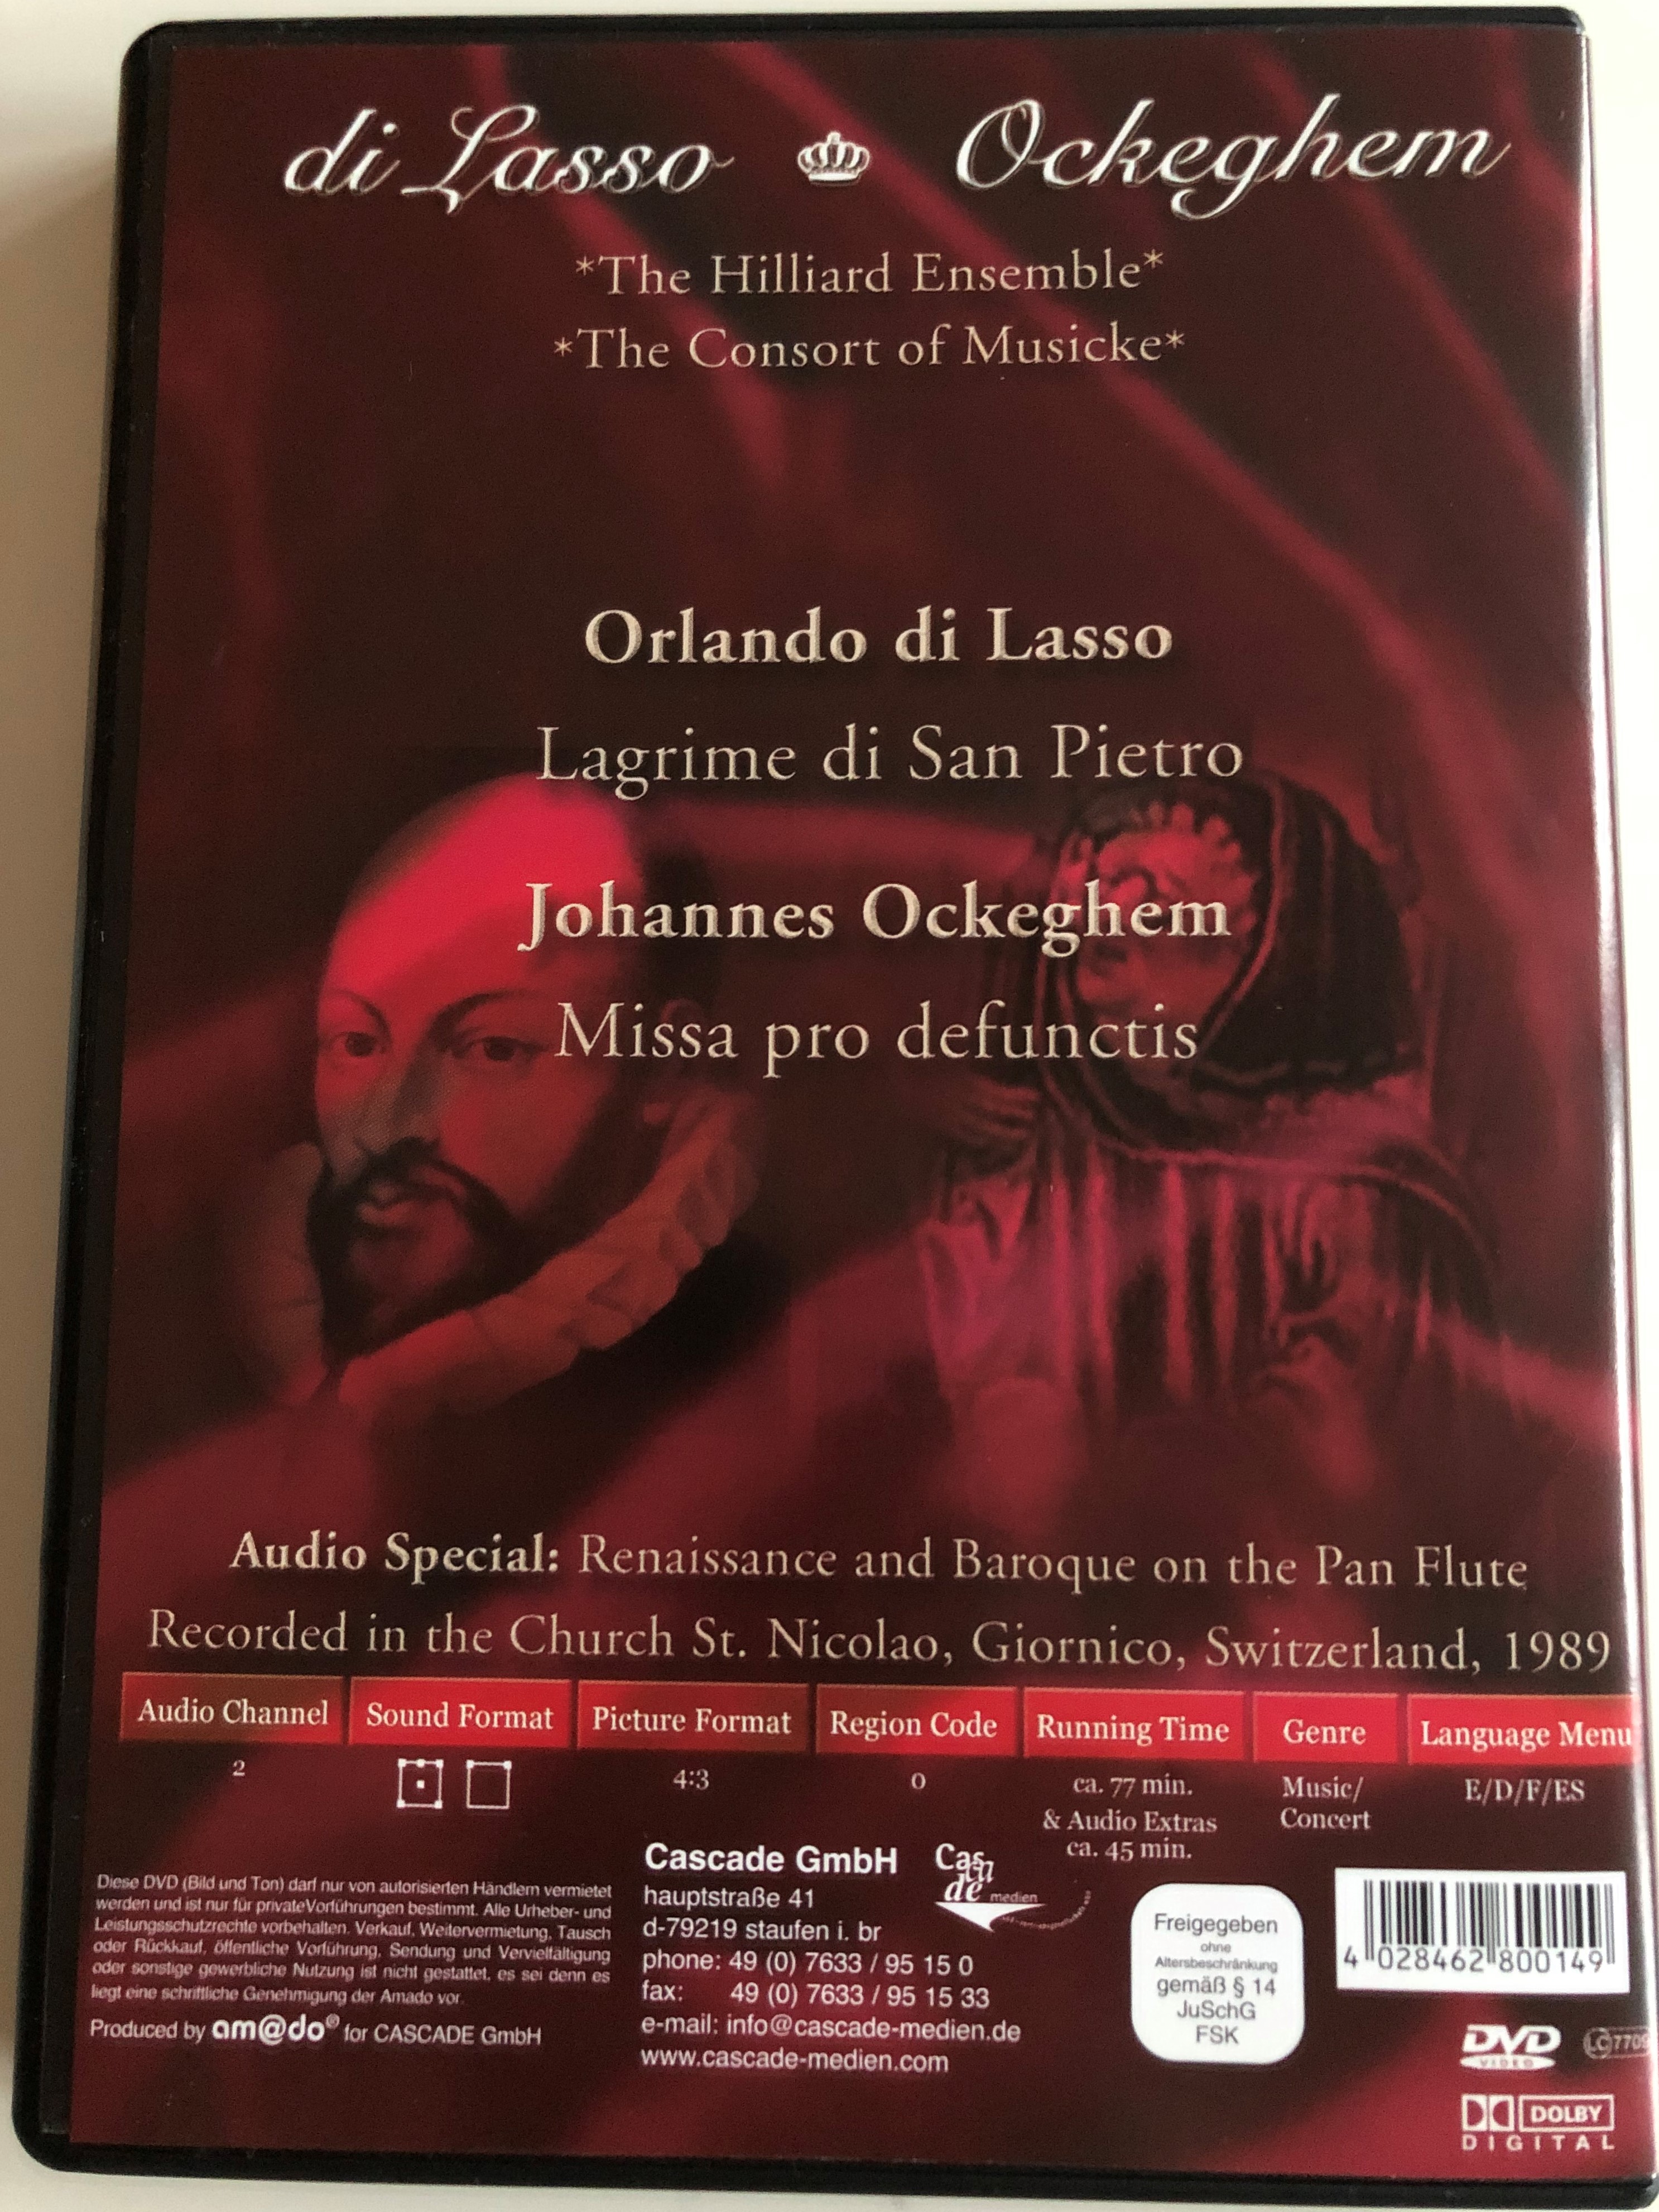 di-lasso-ockeghem-lagrime-di-san-pietro-missa-pro-defunctis-the-hilliard-ensemble-the-consort-of-musicke-silverline-classics-cascade-medien-dvd-2003-80014-4-.jpg